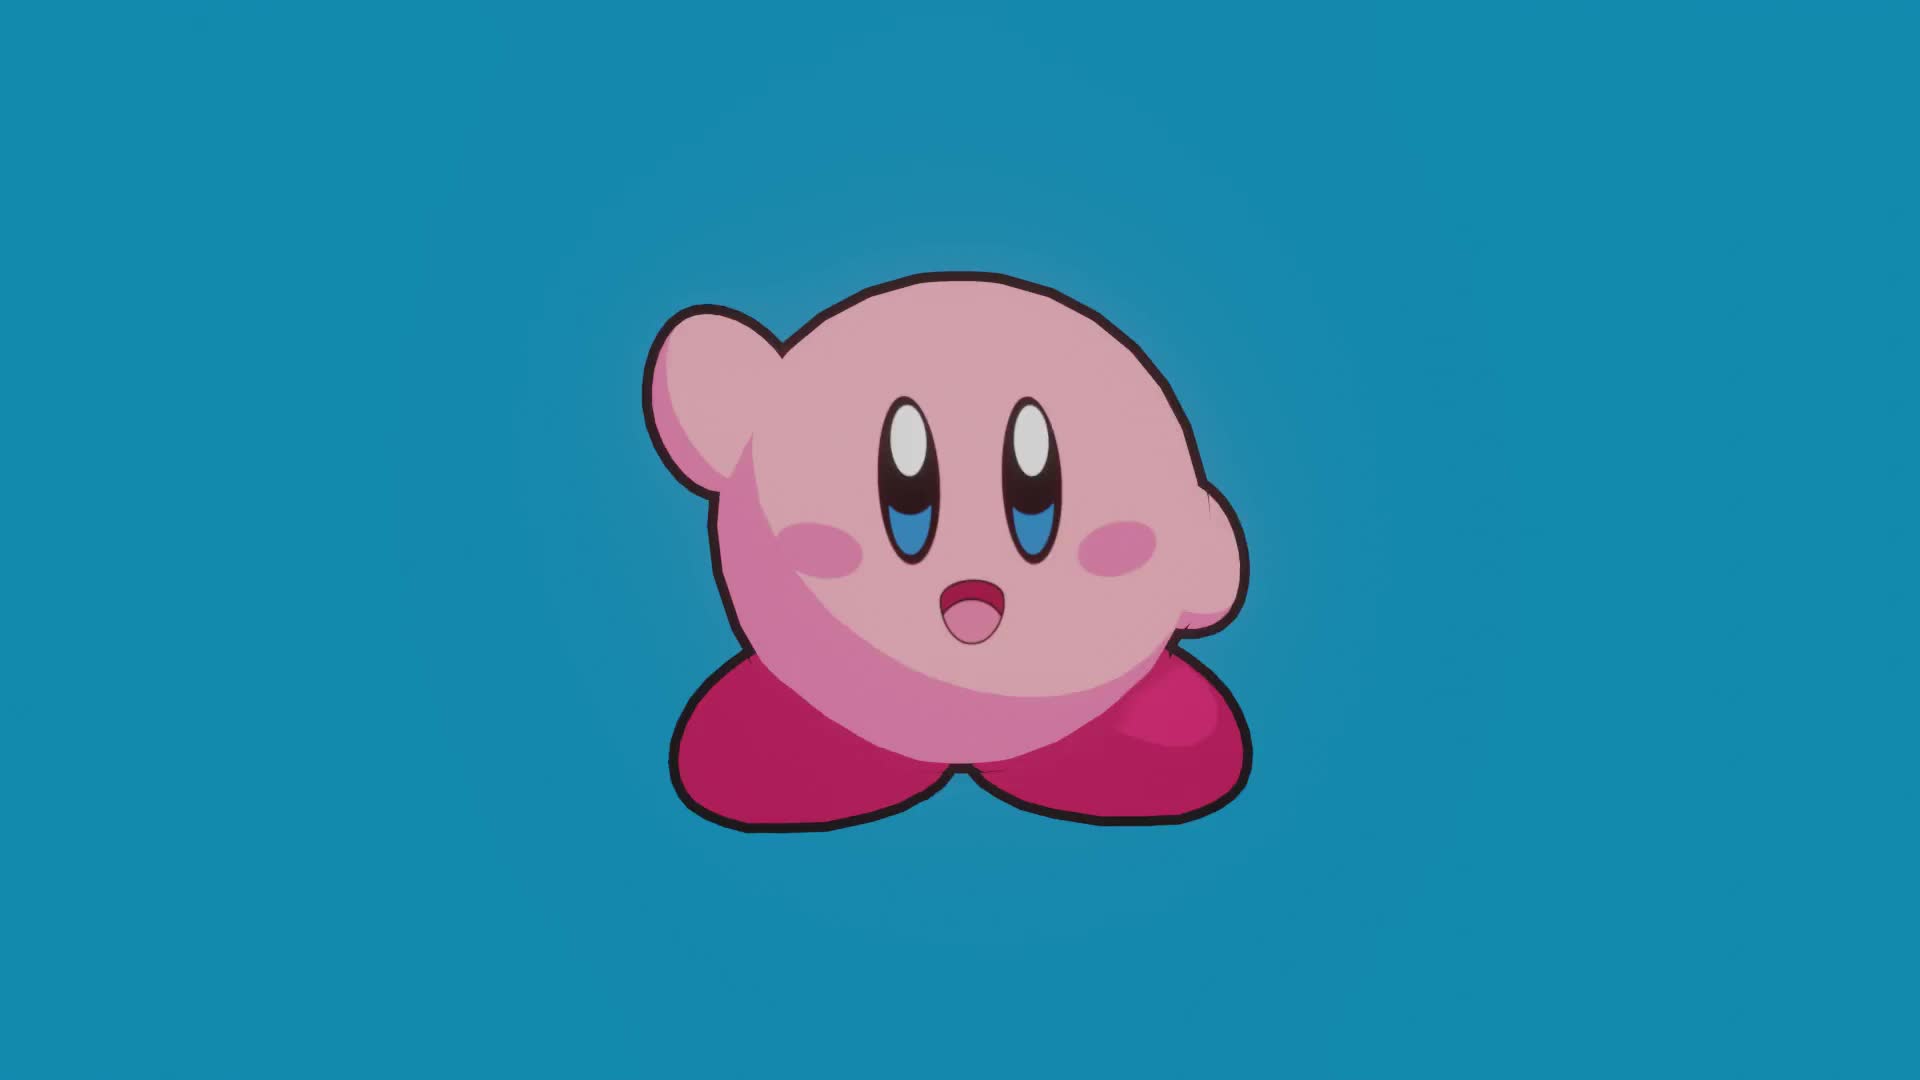 ArtStation - Kirby in Blender